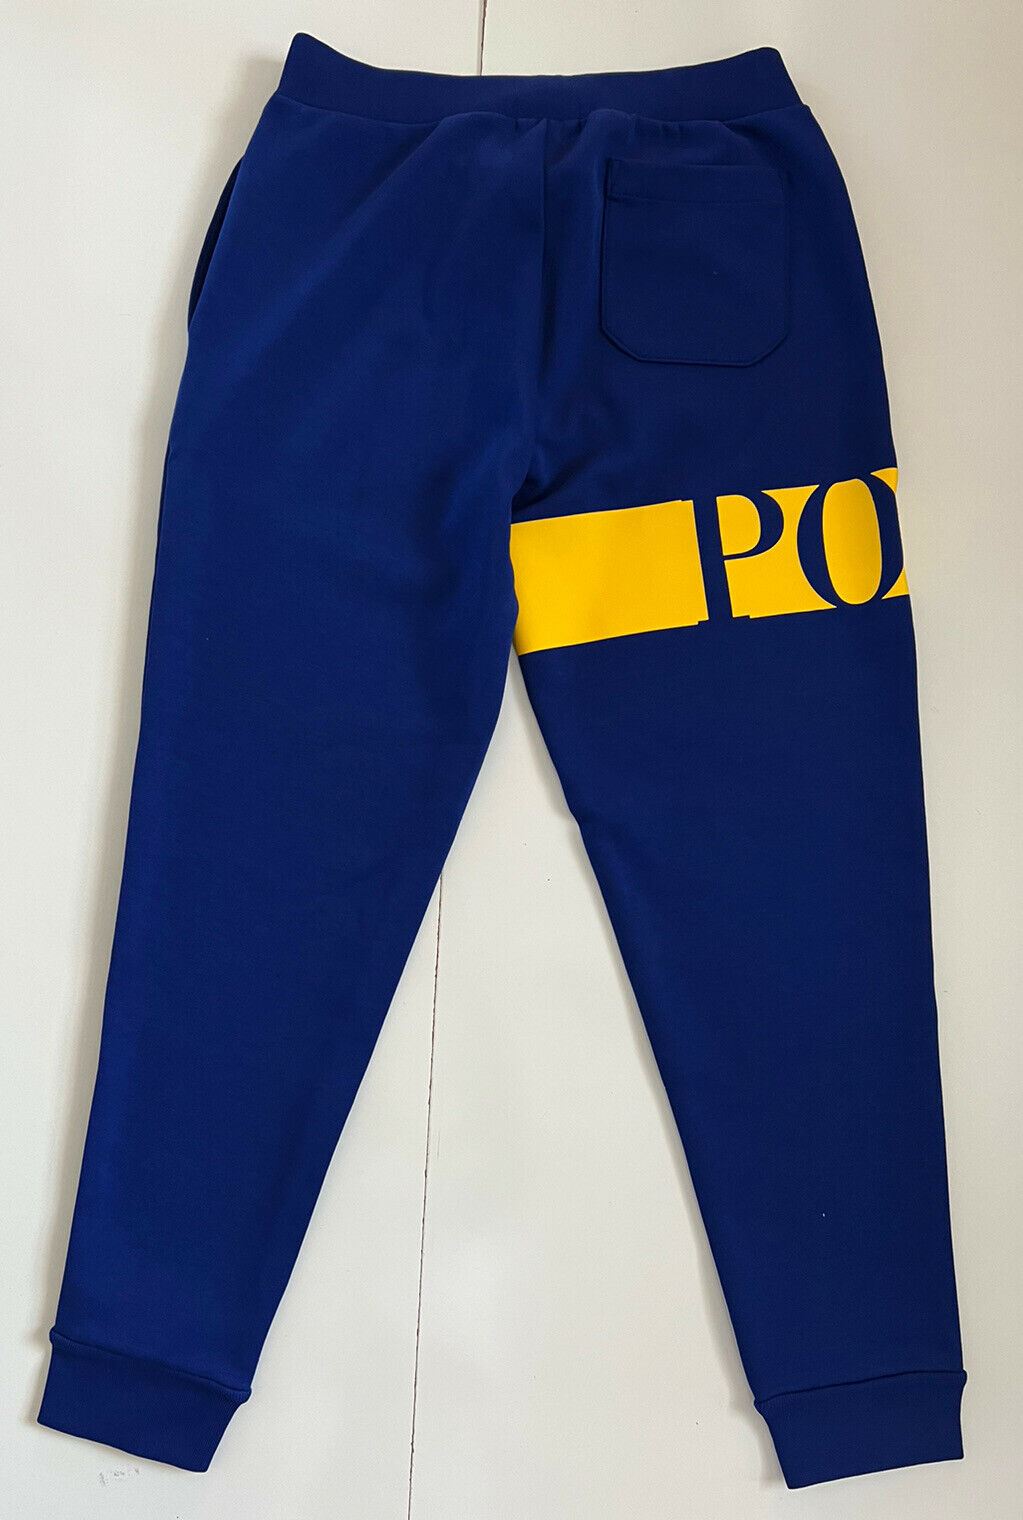 Neu mit Etikett: 125 $ Polo Ralph Lauren Herren-Freizeithose mit großem Polo-Logo in Blau, Größe S